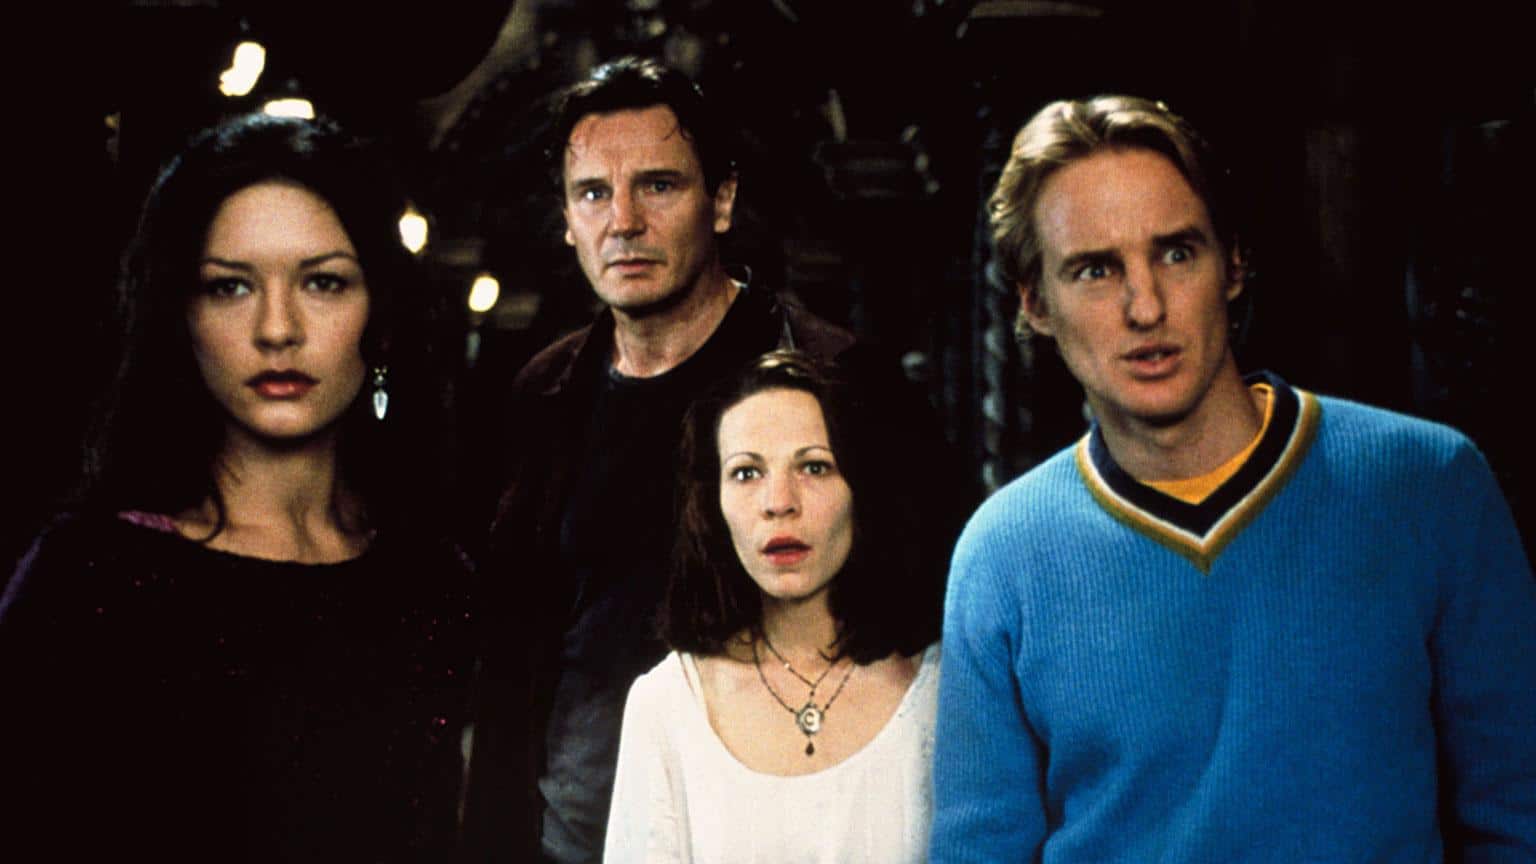 Das Geisterschloss Film 1999 erstmals auf Blu-ray shop kaufen Artikelbild